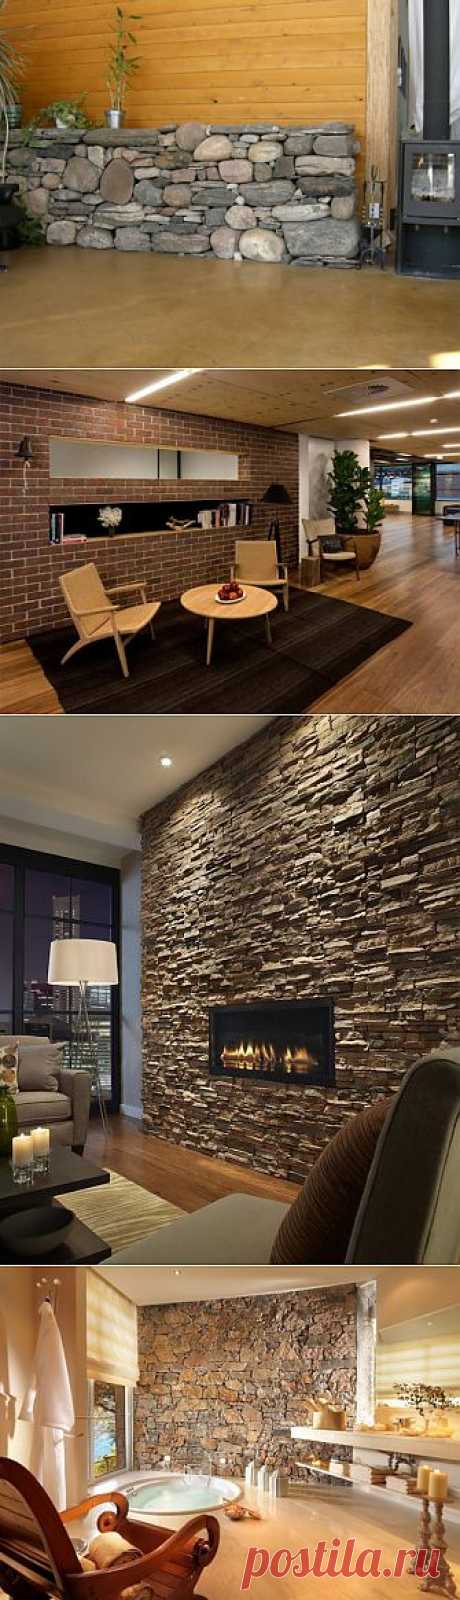 Искусственный камень в интерьере квартиры | Декоративный камень в интерьере